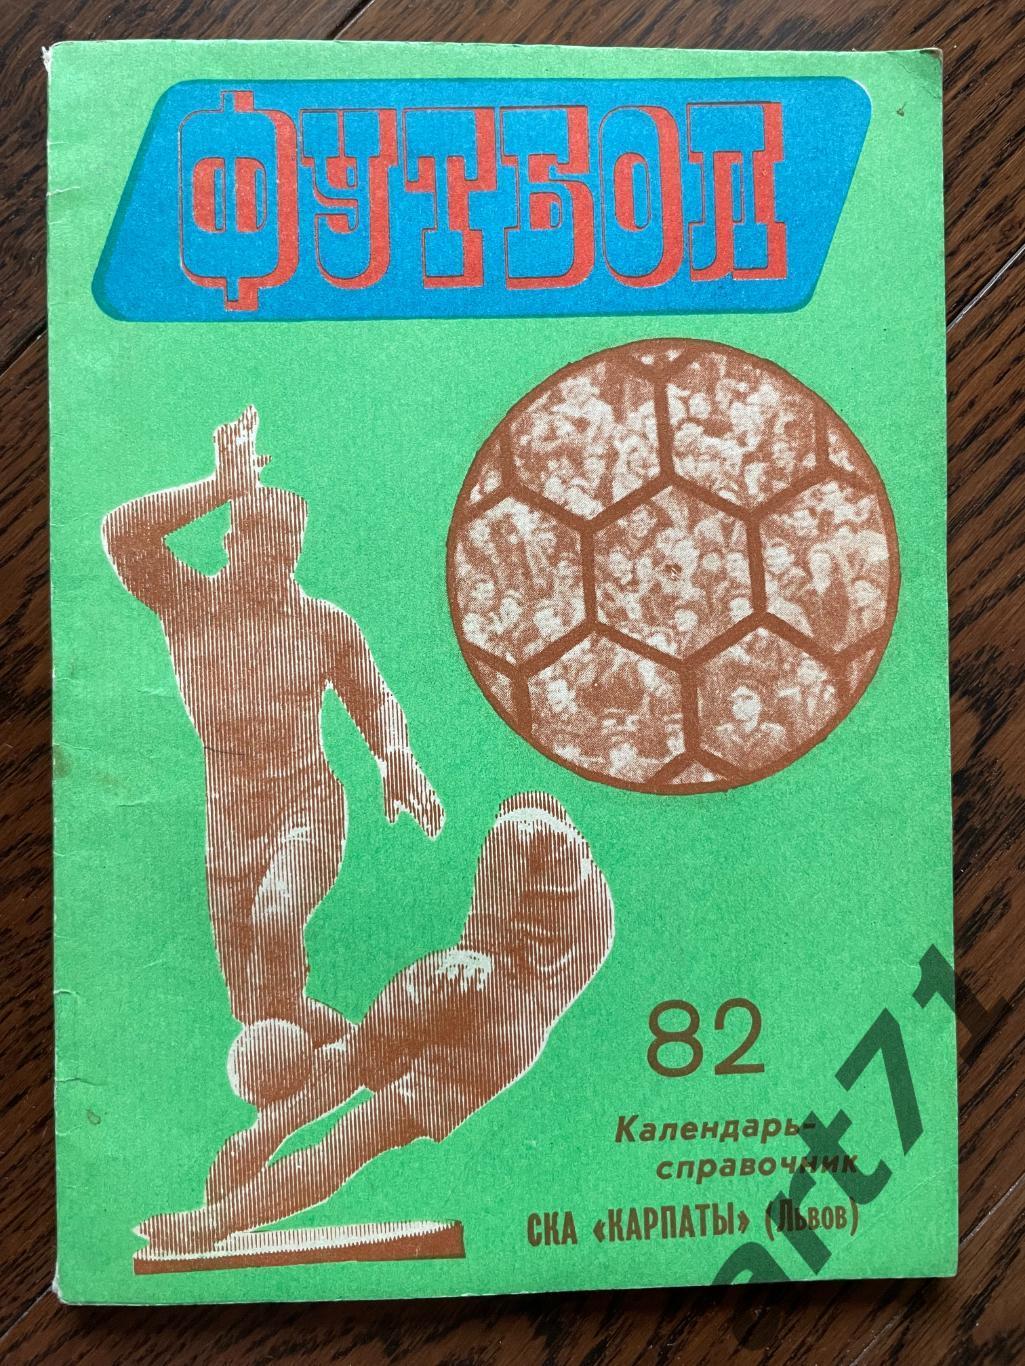 Львов 1982. Календарь-справочник